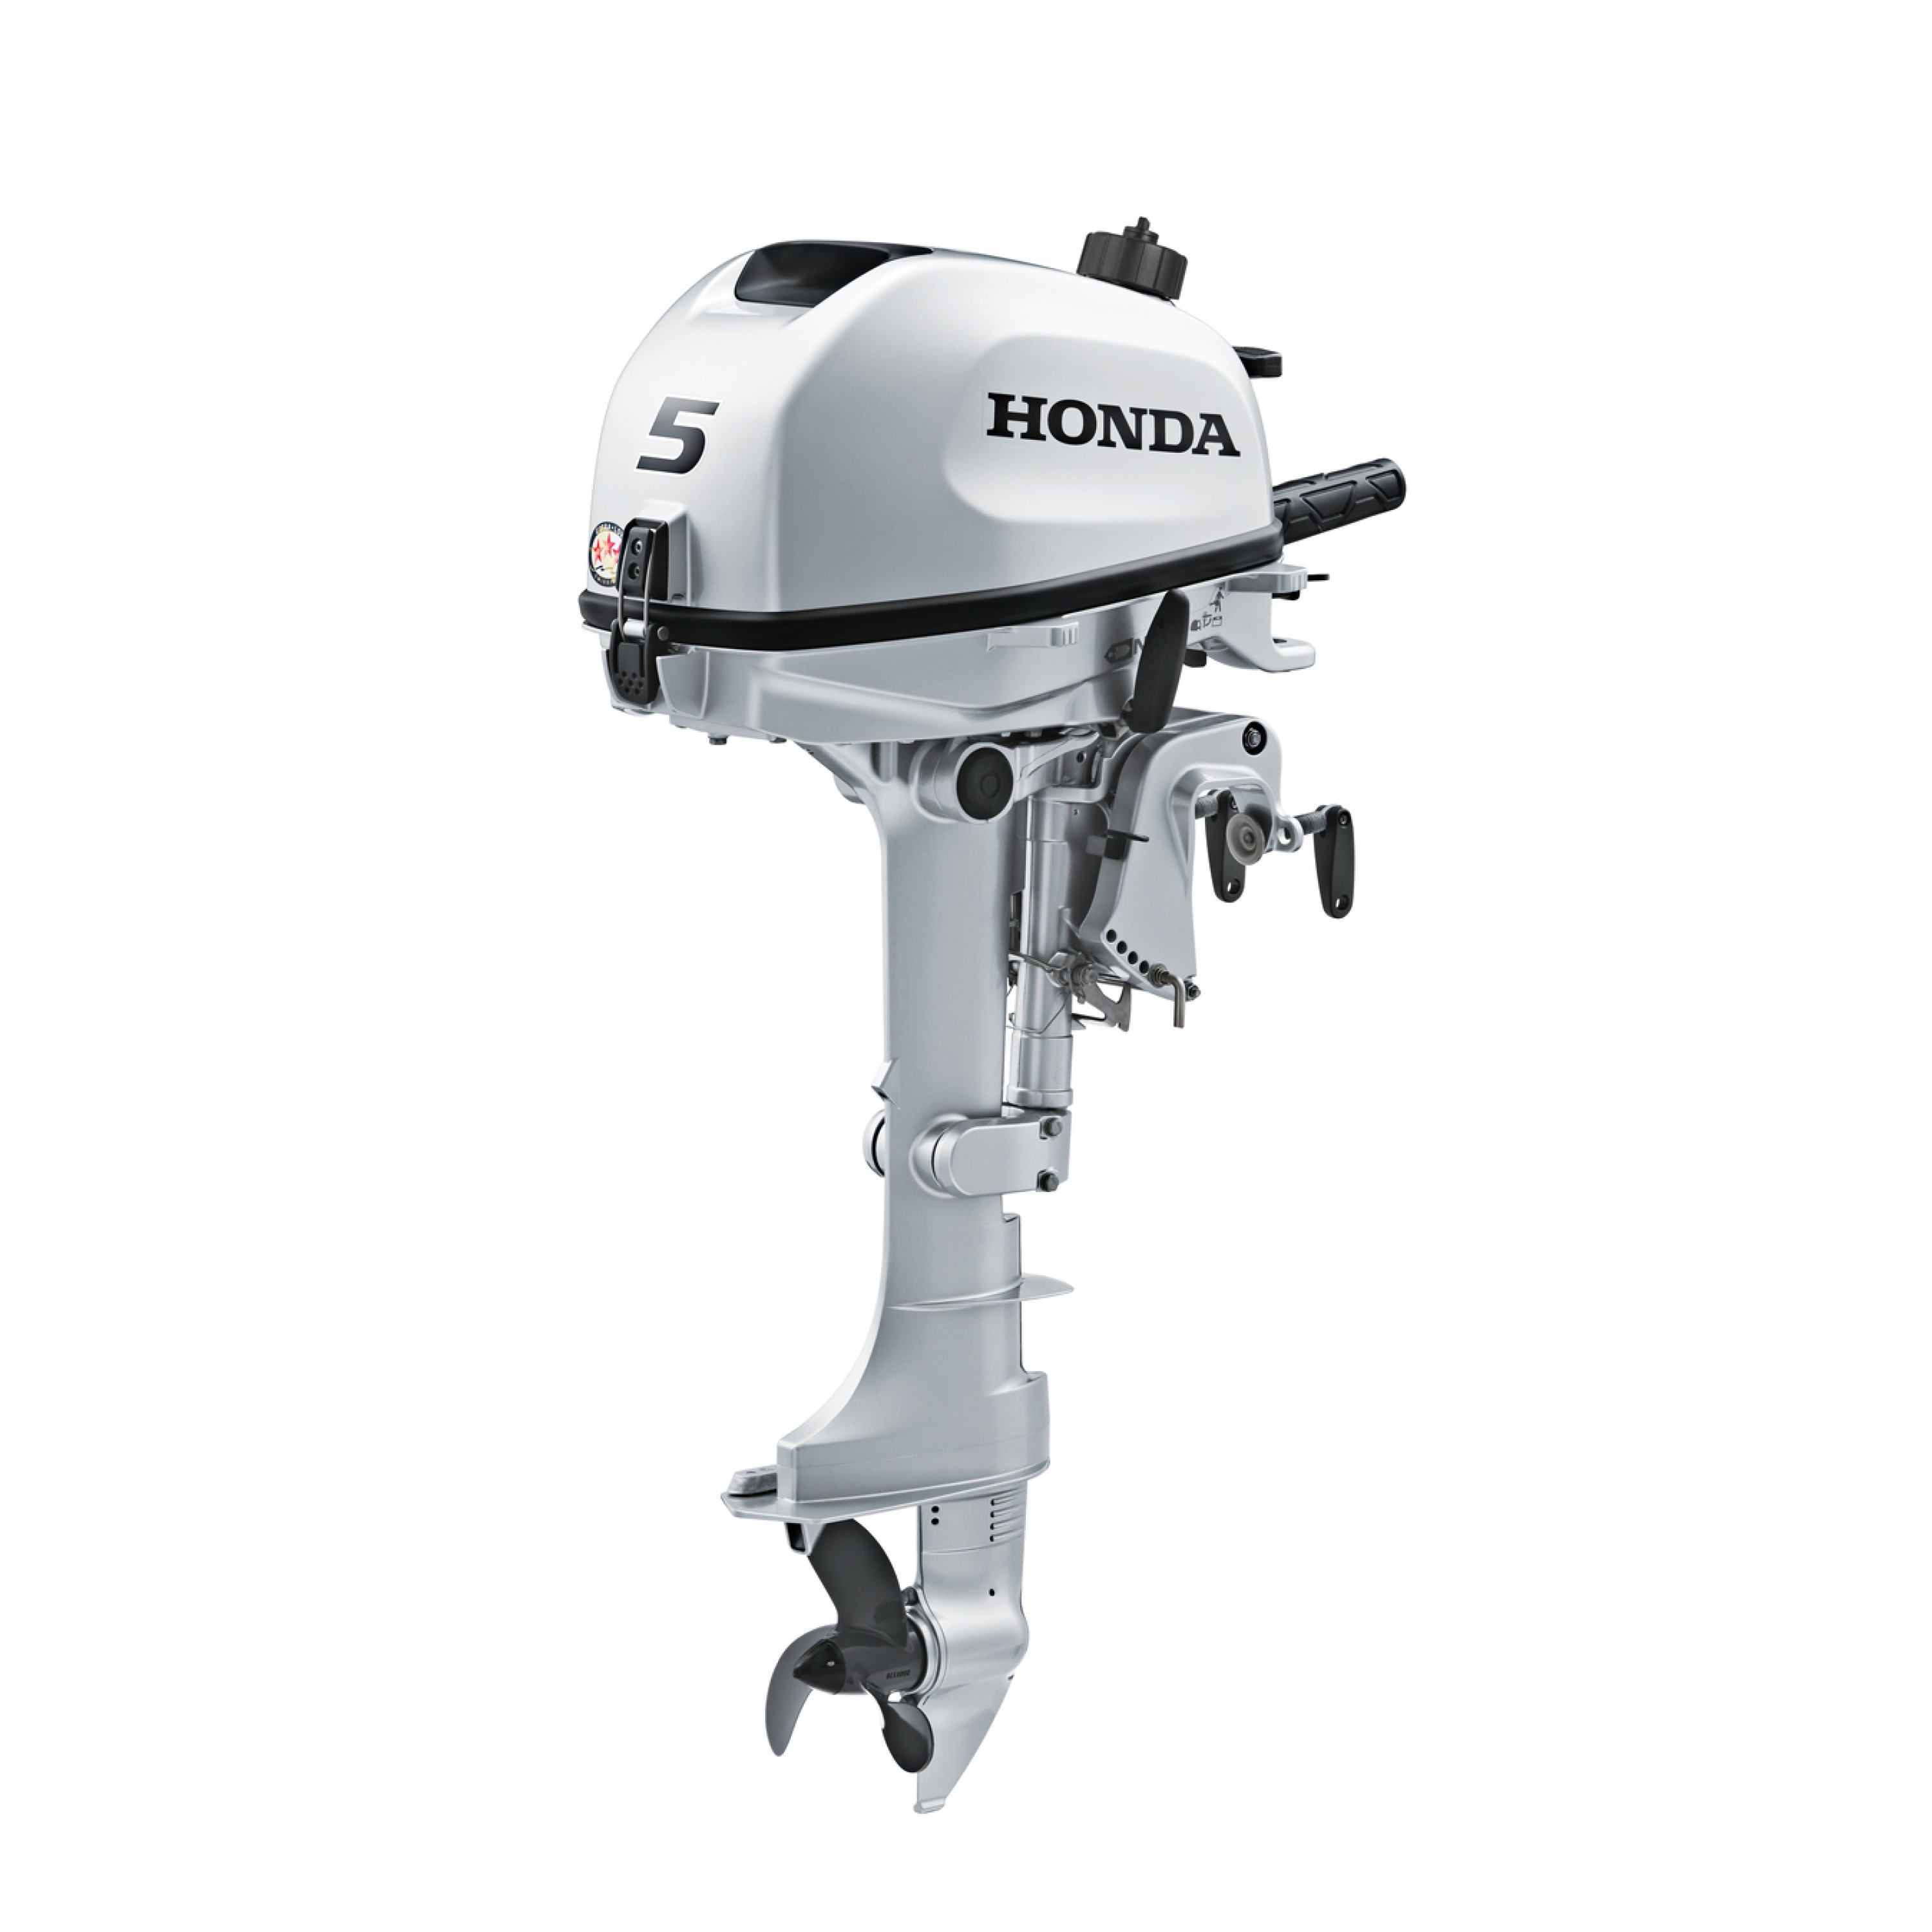 5 HP Honda Outboard Motor, BF5DHLHC